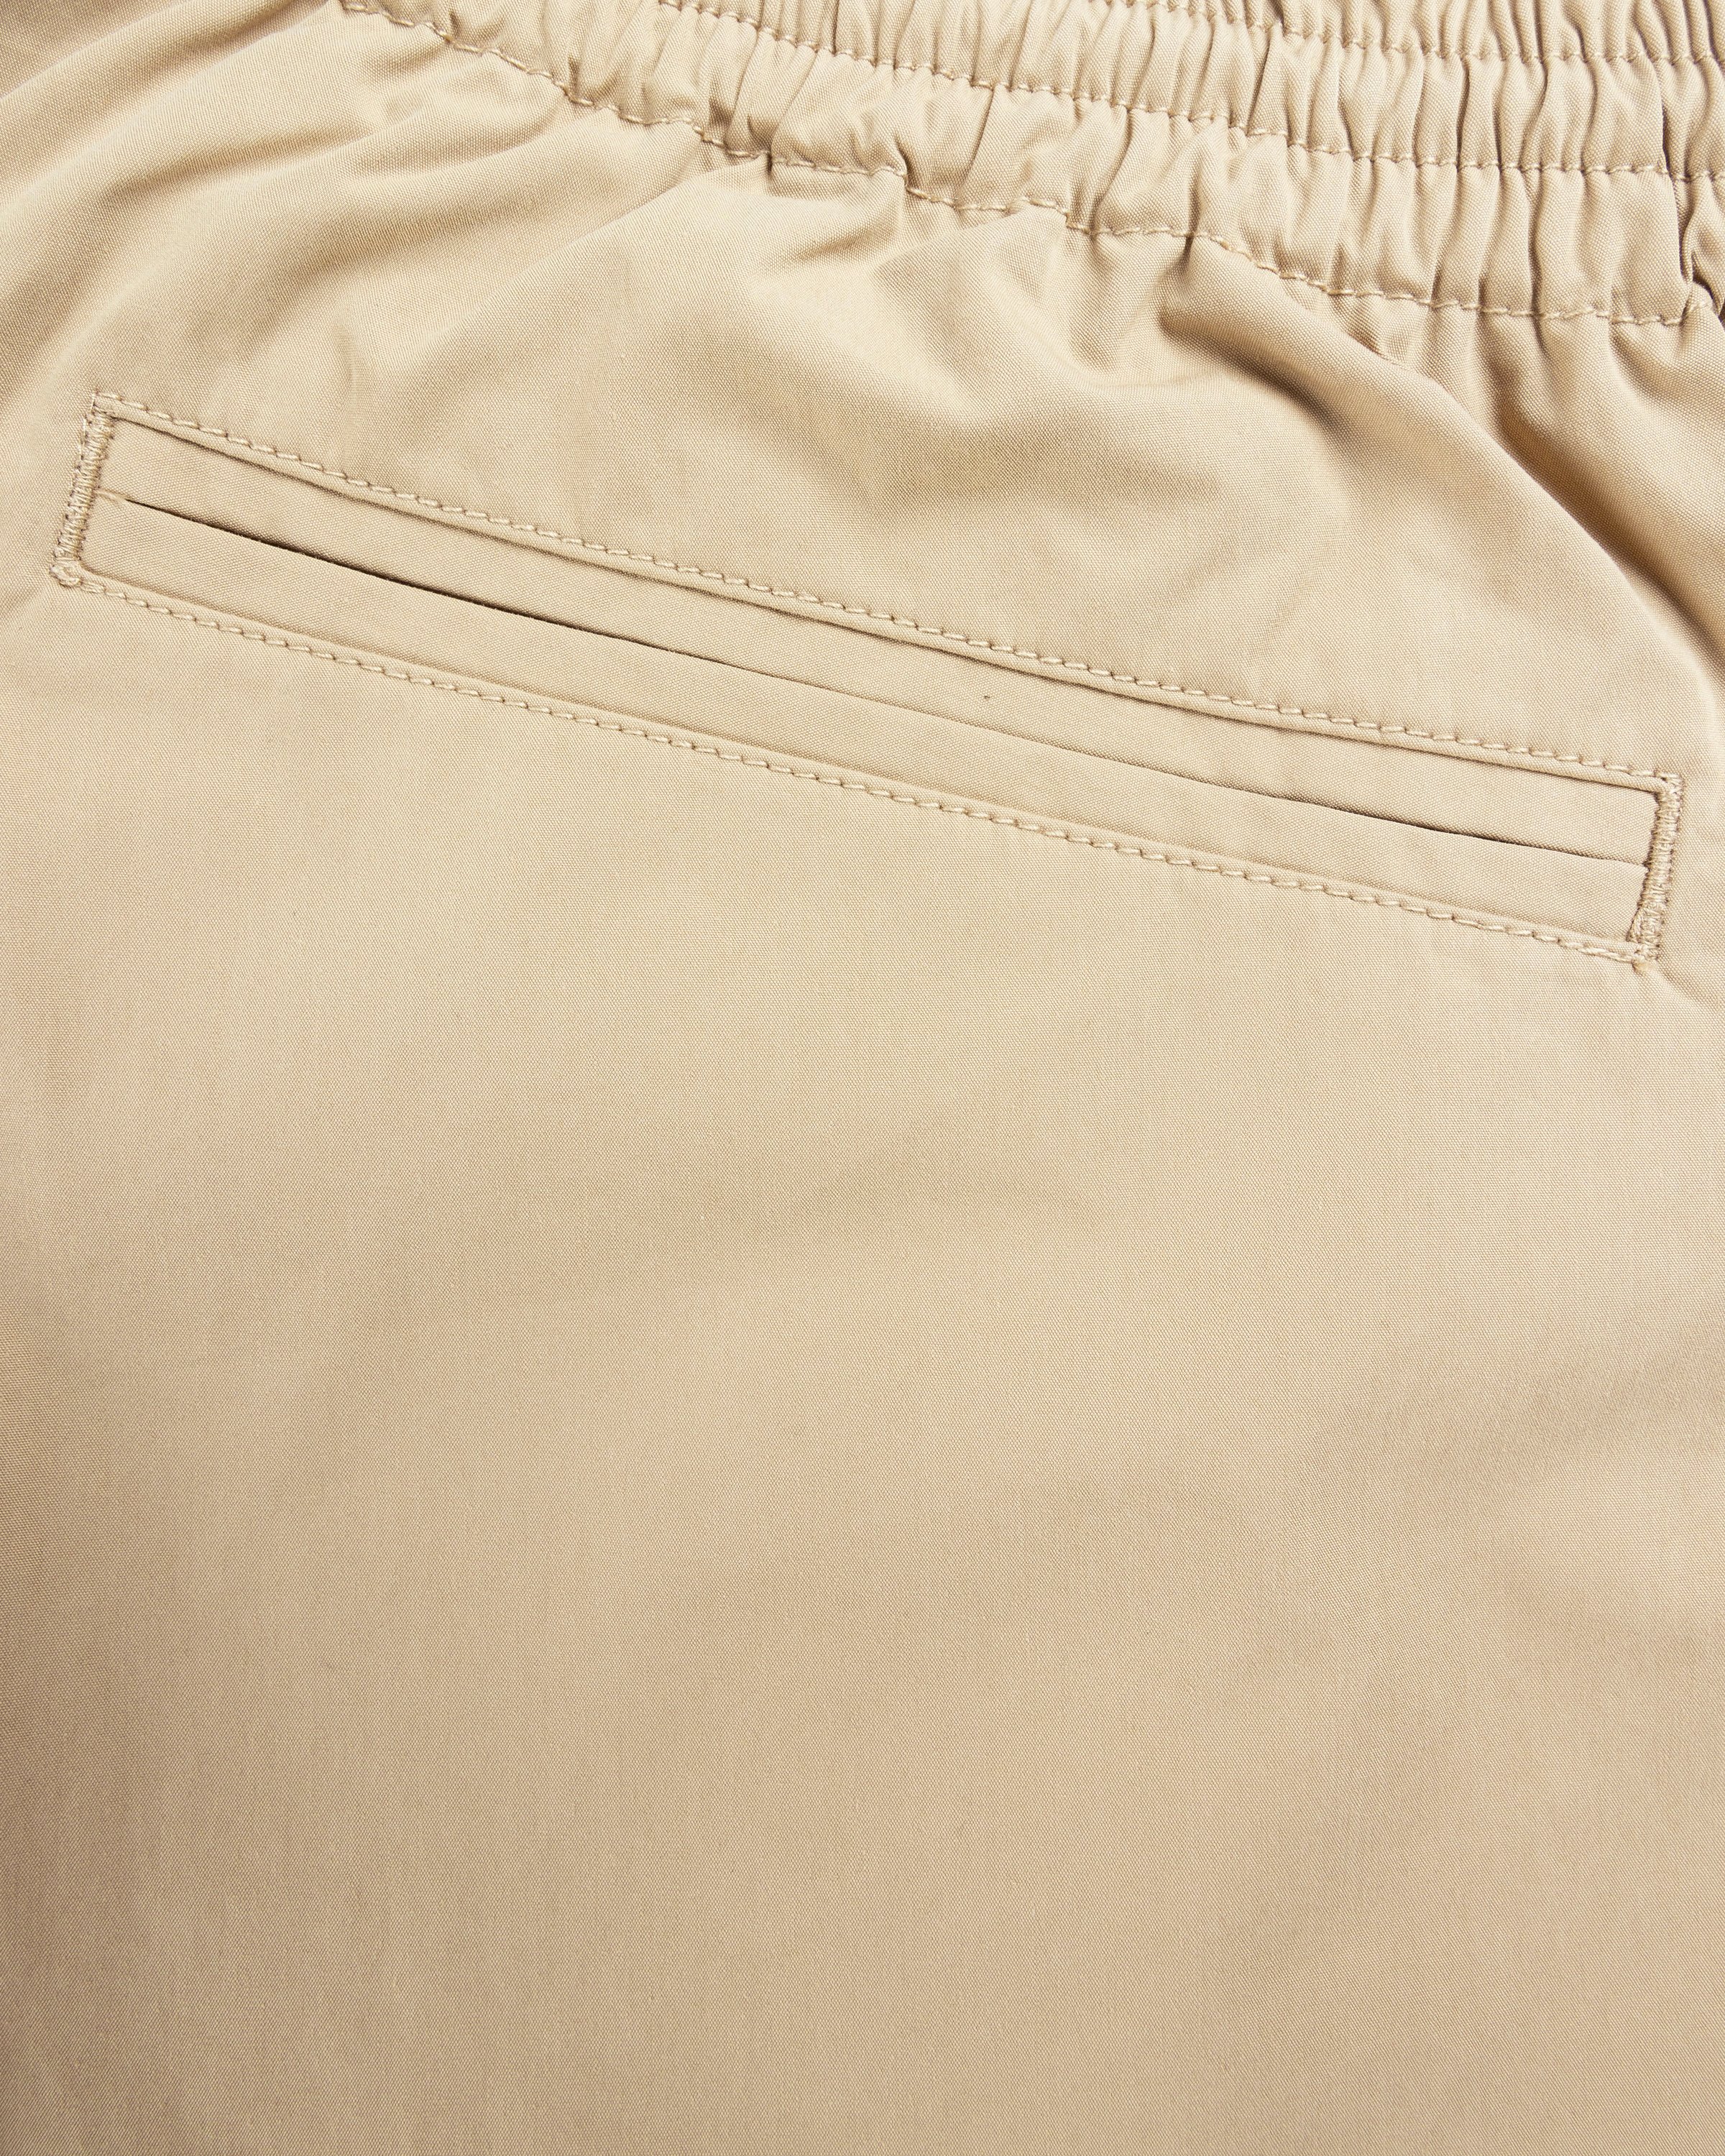 Highsnobiety HS05 - Weather Cloth Nylon Shorts - Clothing - Beige - Image 6